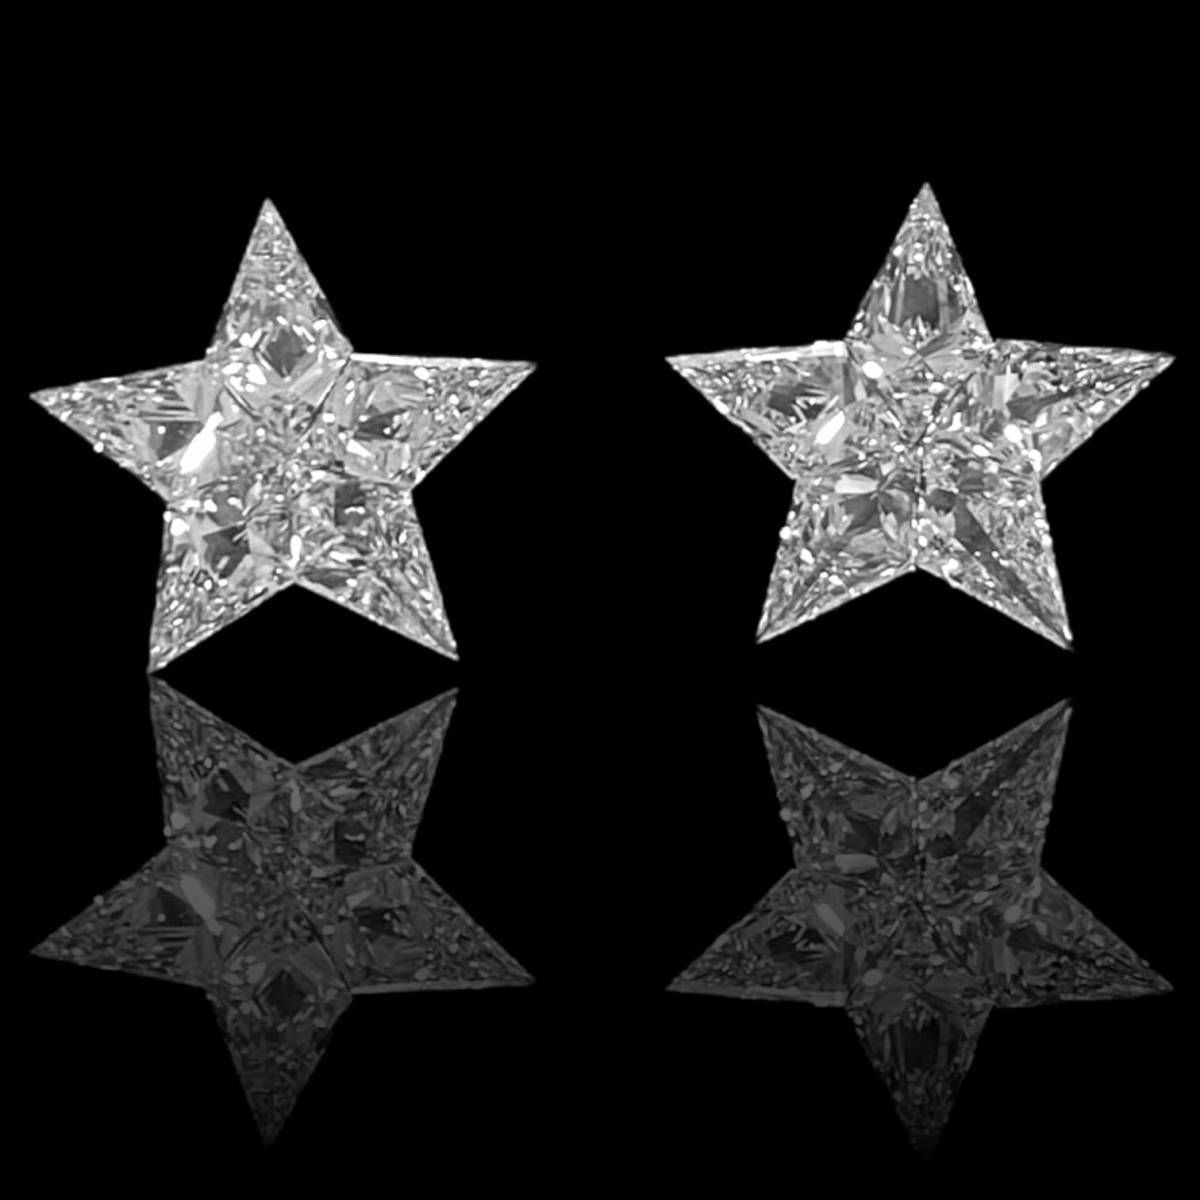 STAR 星形ダイヤモンドセット 1.653ct 10PC/RT1839/CGL